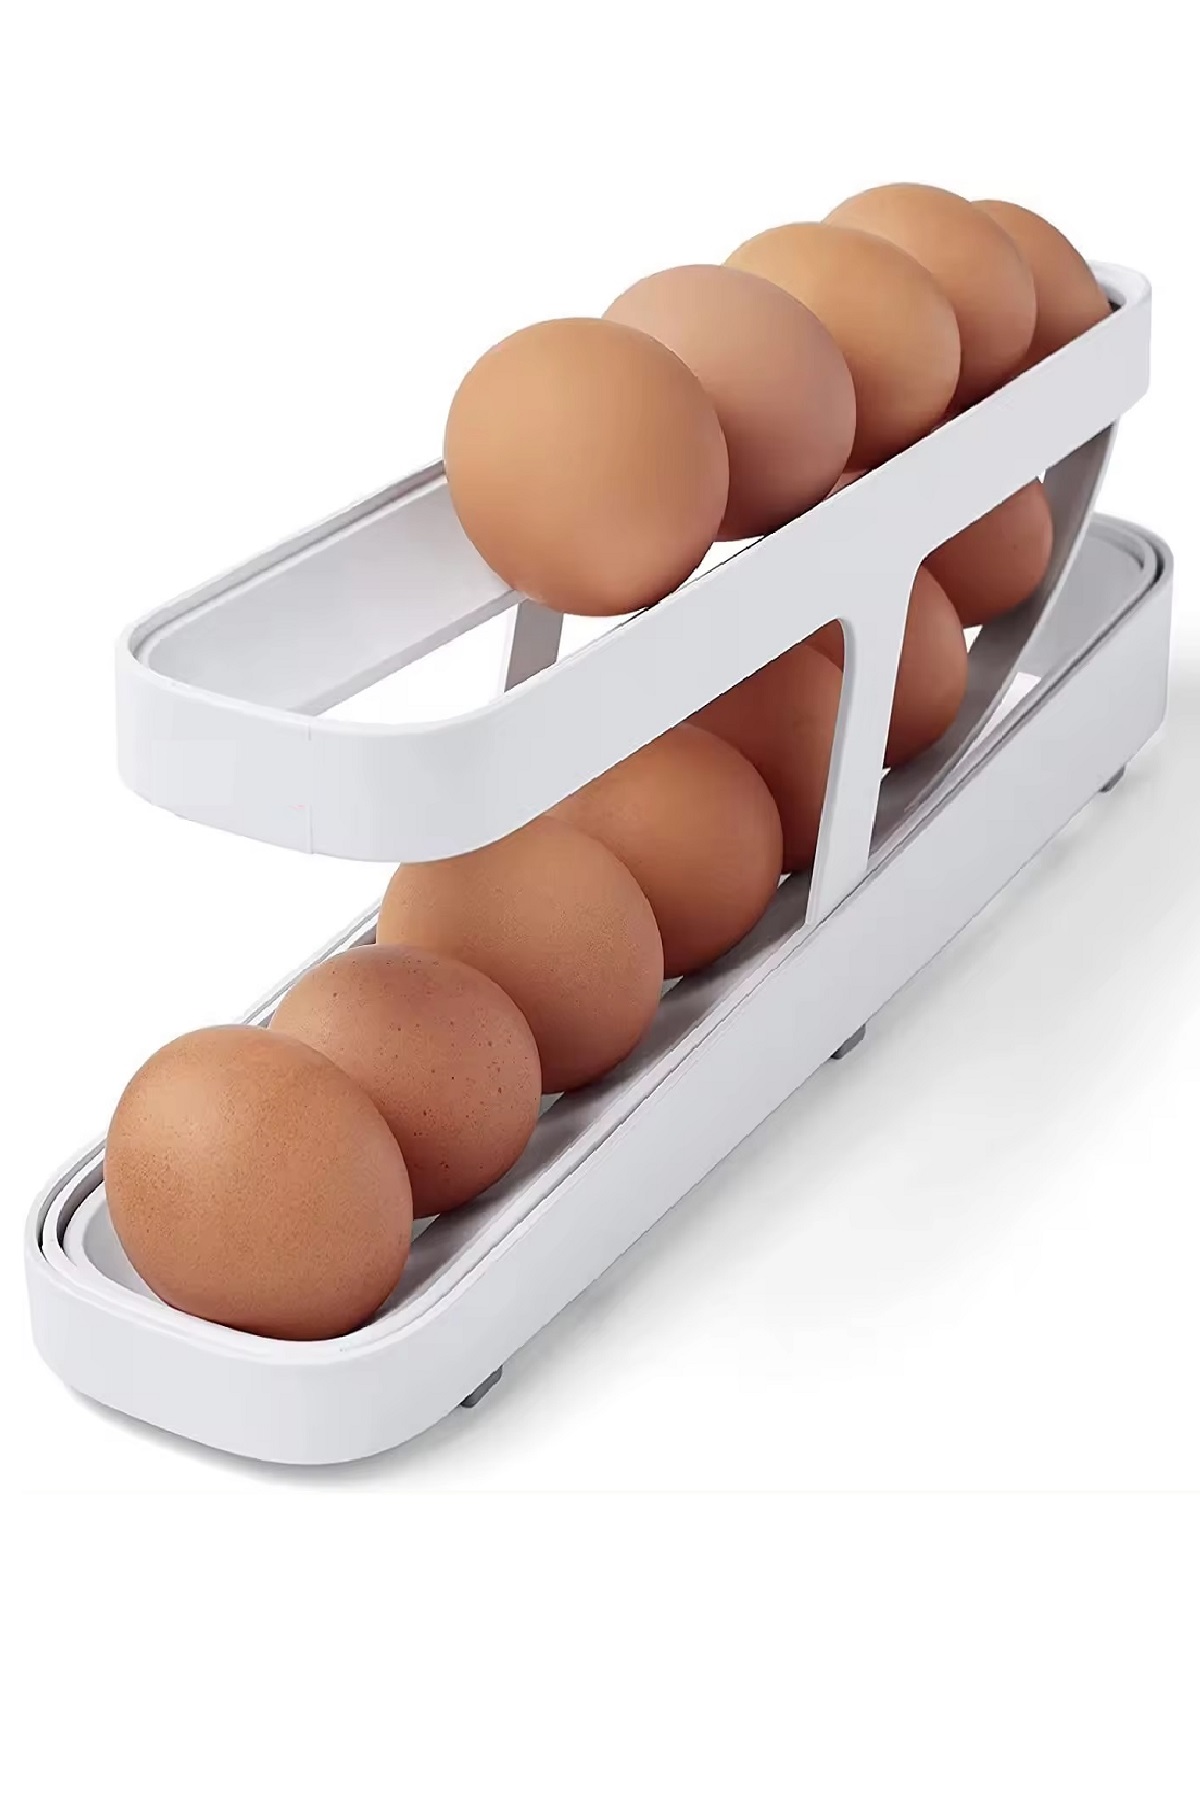 CLZ174 Otomatik 2 Katlı Buzdolabı Yumurta Organizeri - Yumurta Saklama Kabı - 14 Yumurta Kapasiteli